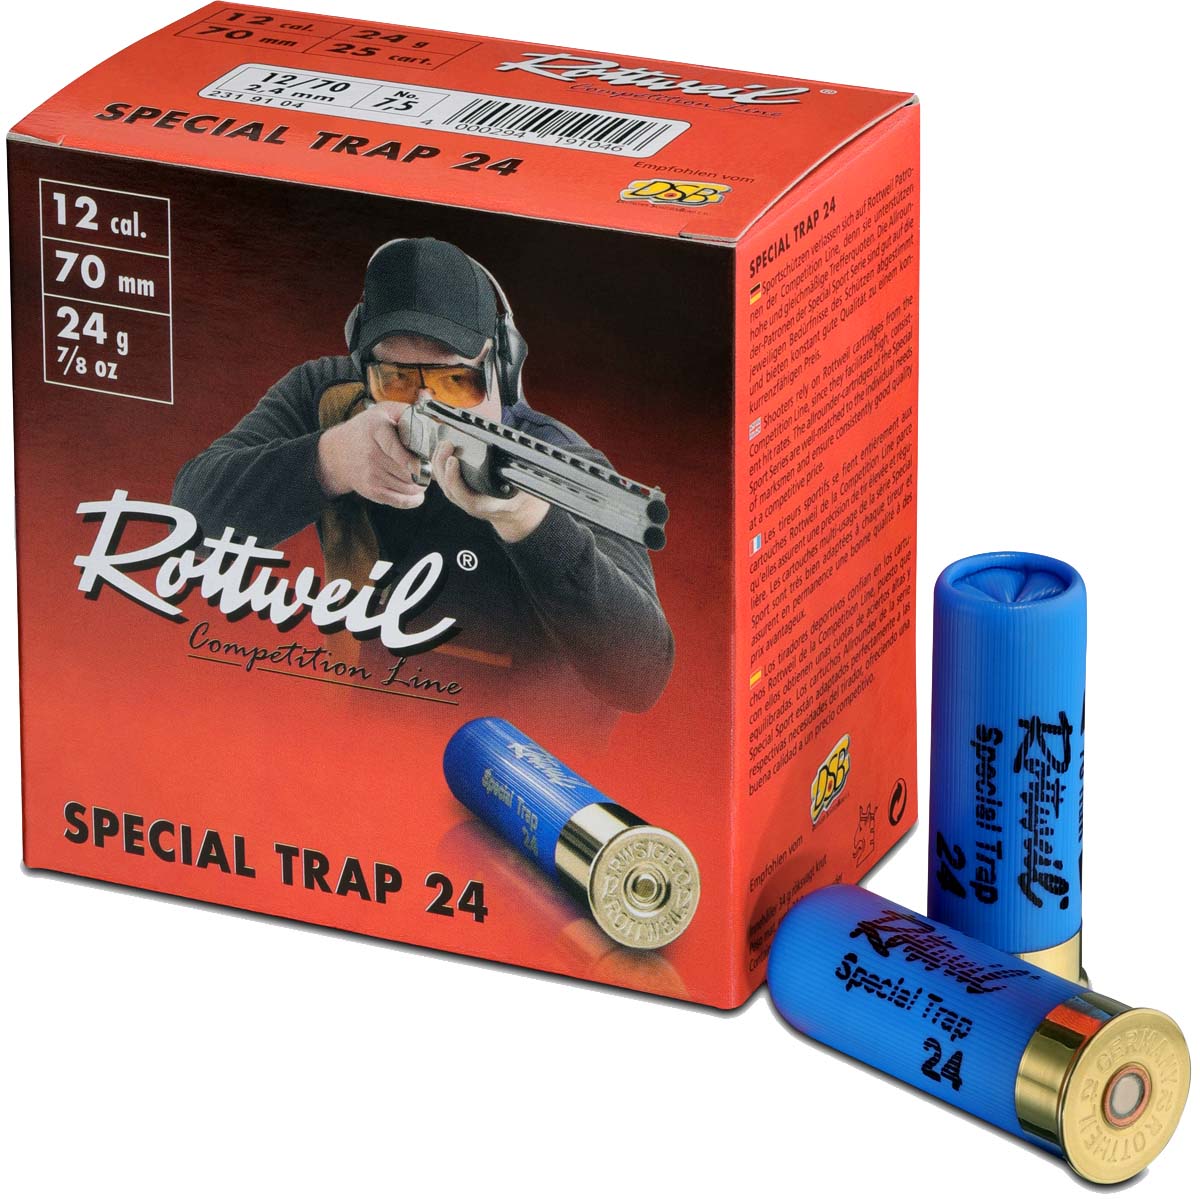 Rottweil 12/70 Special Trap 2,4mm - 24g - günstige Schrotpatrone, optimal für Training und Wettkampf